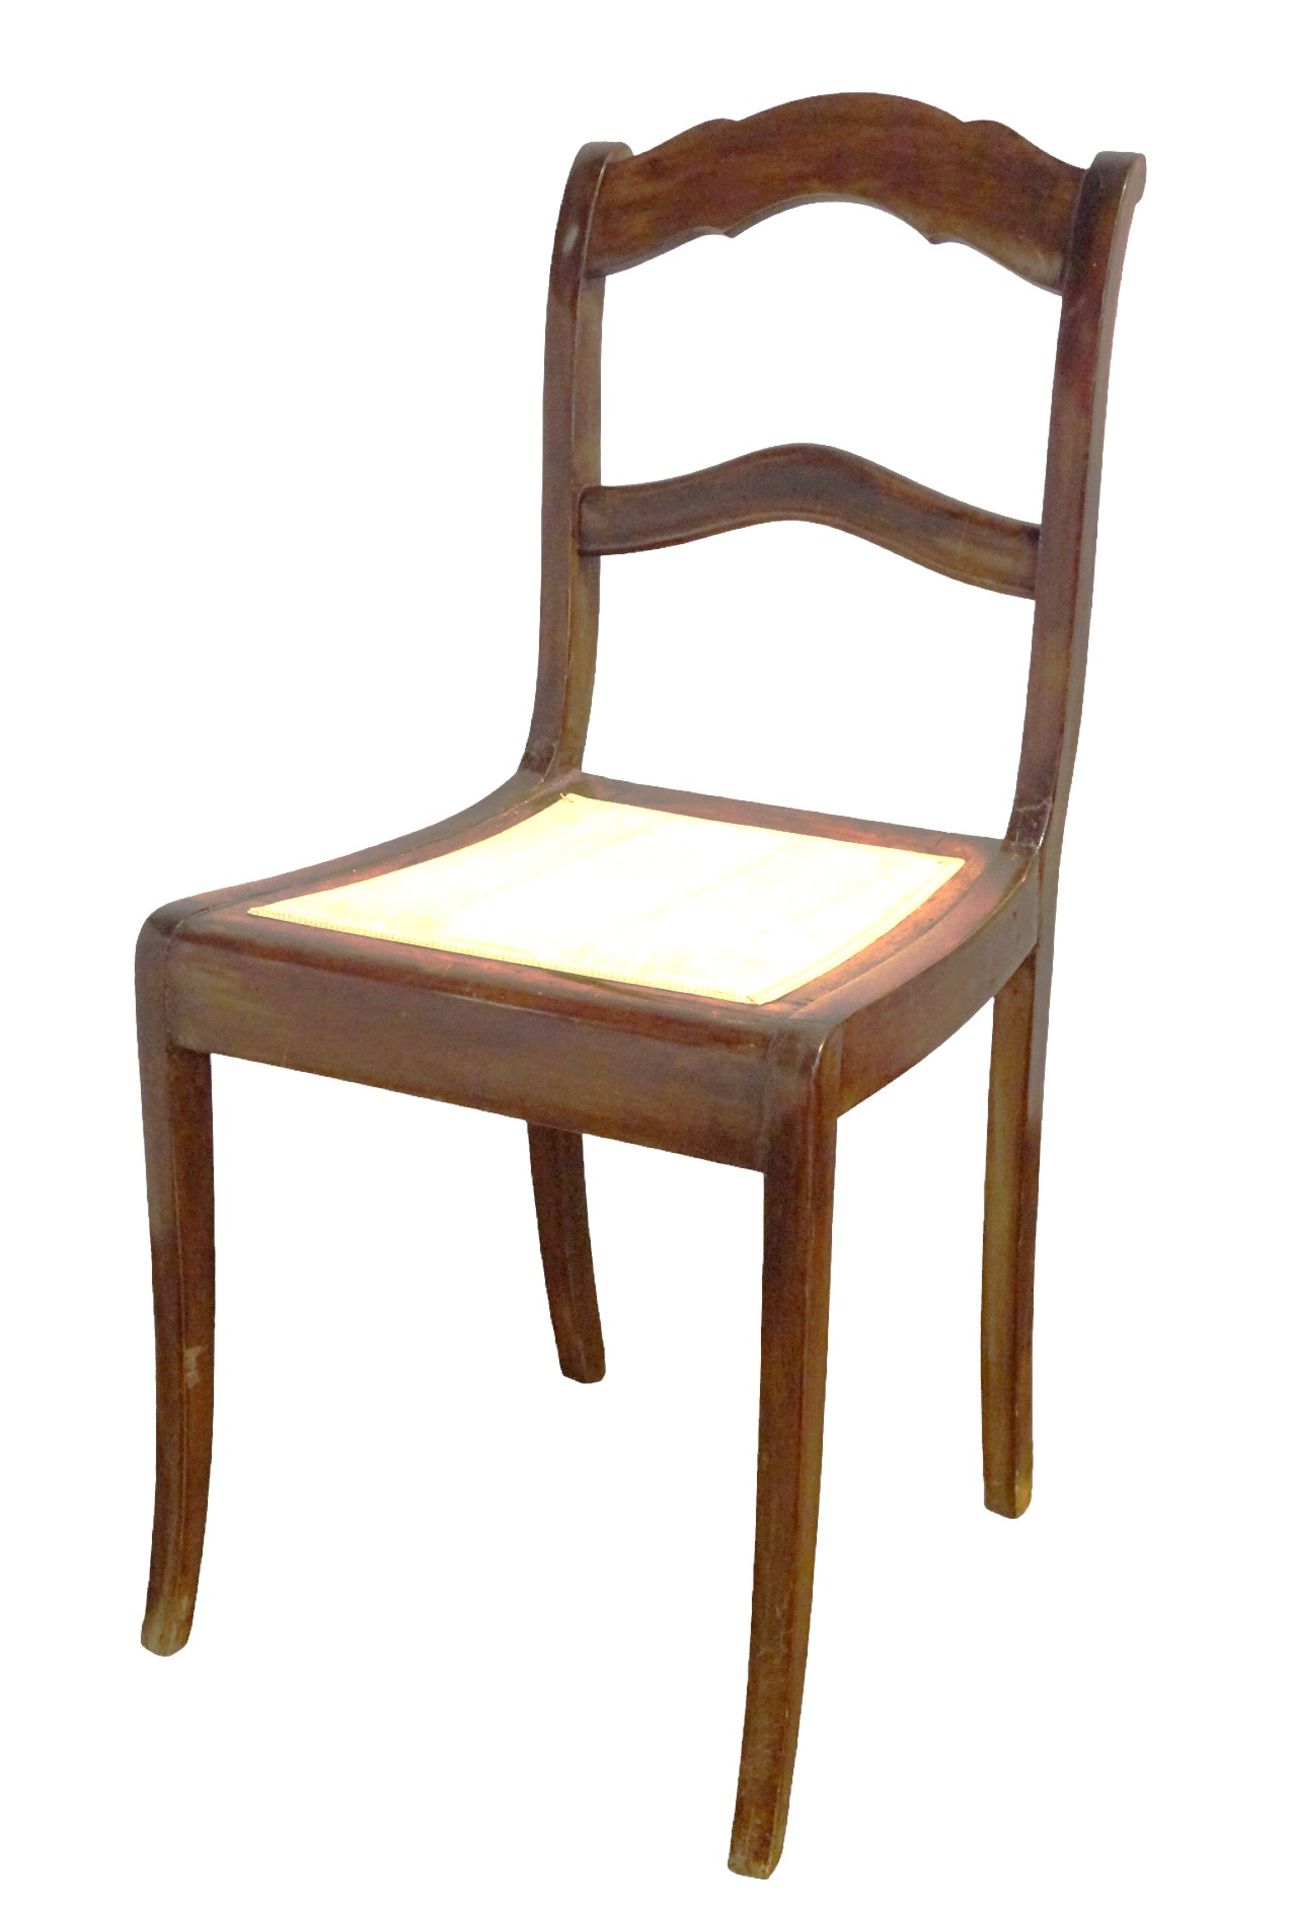 6 Stühle im Biedermeierstil; wohl um 1890; Nussbaum, teilmassiv; Sitzflächen gepolstert und überwie - Bild 4 aus 4